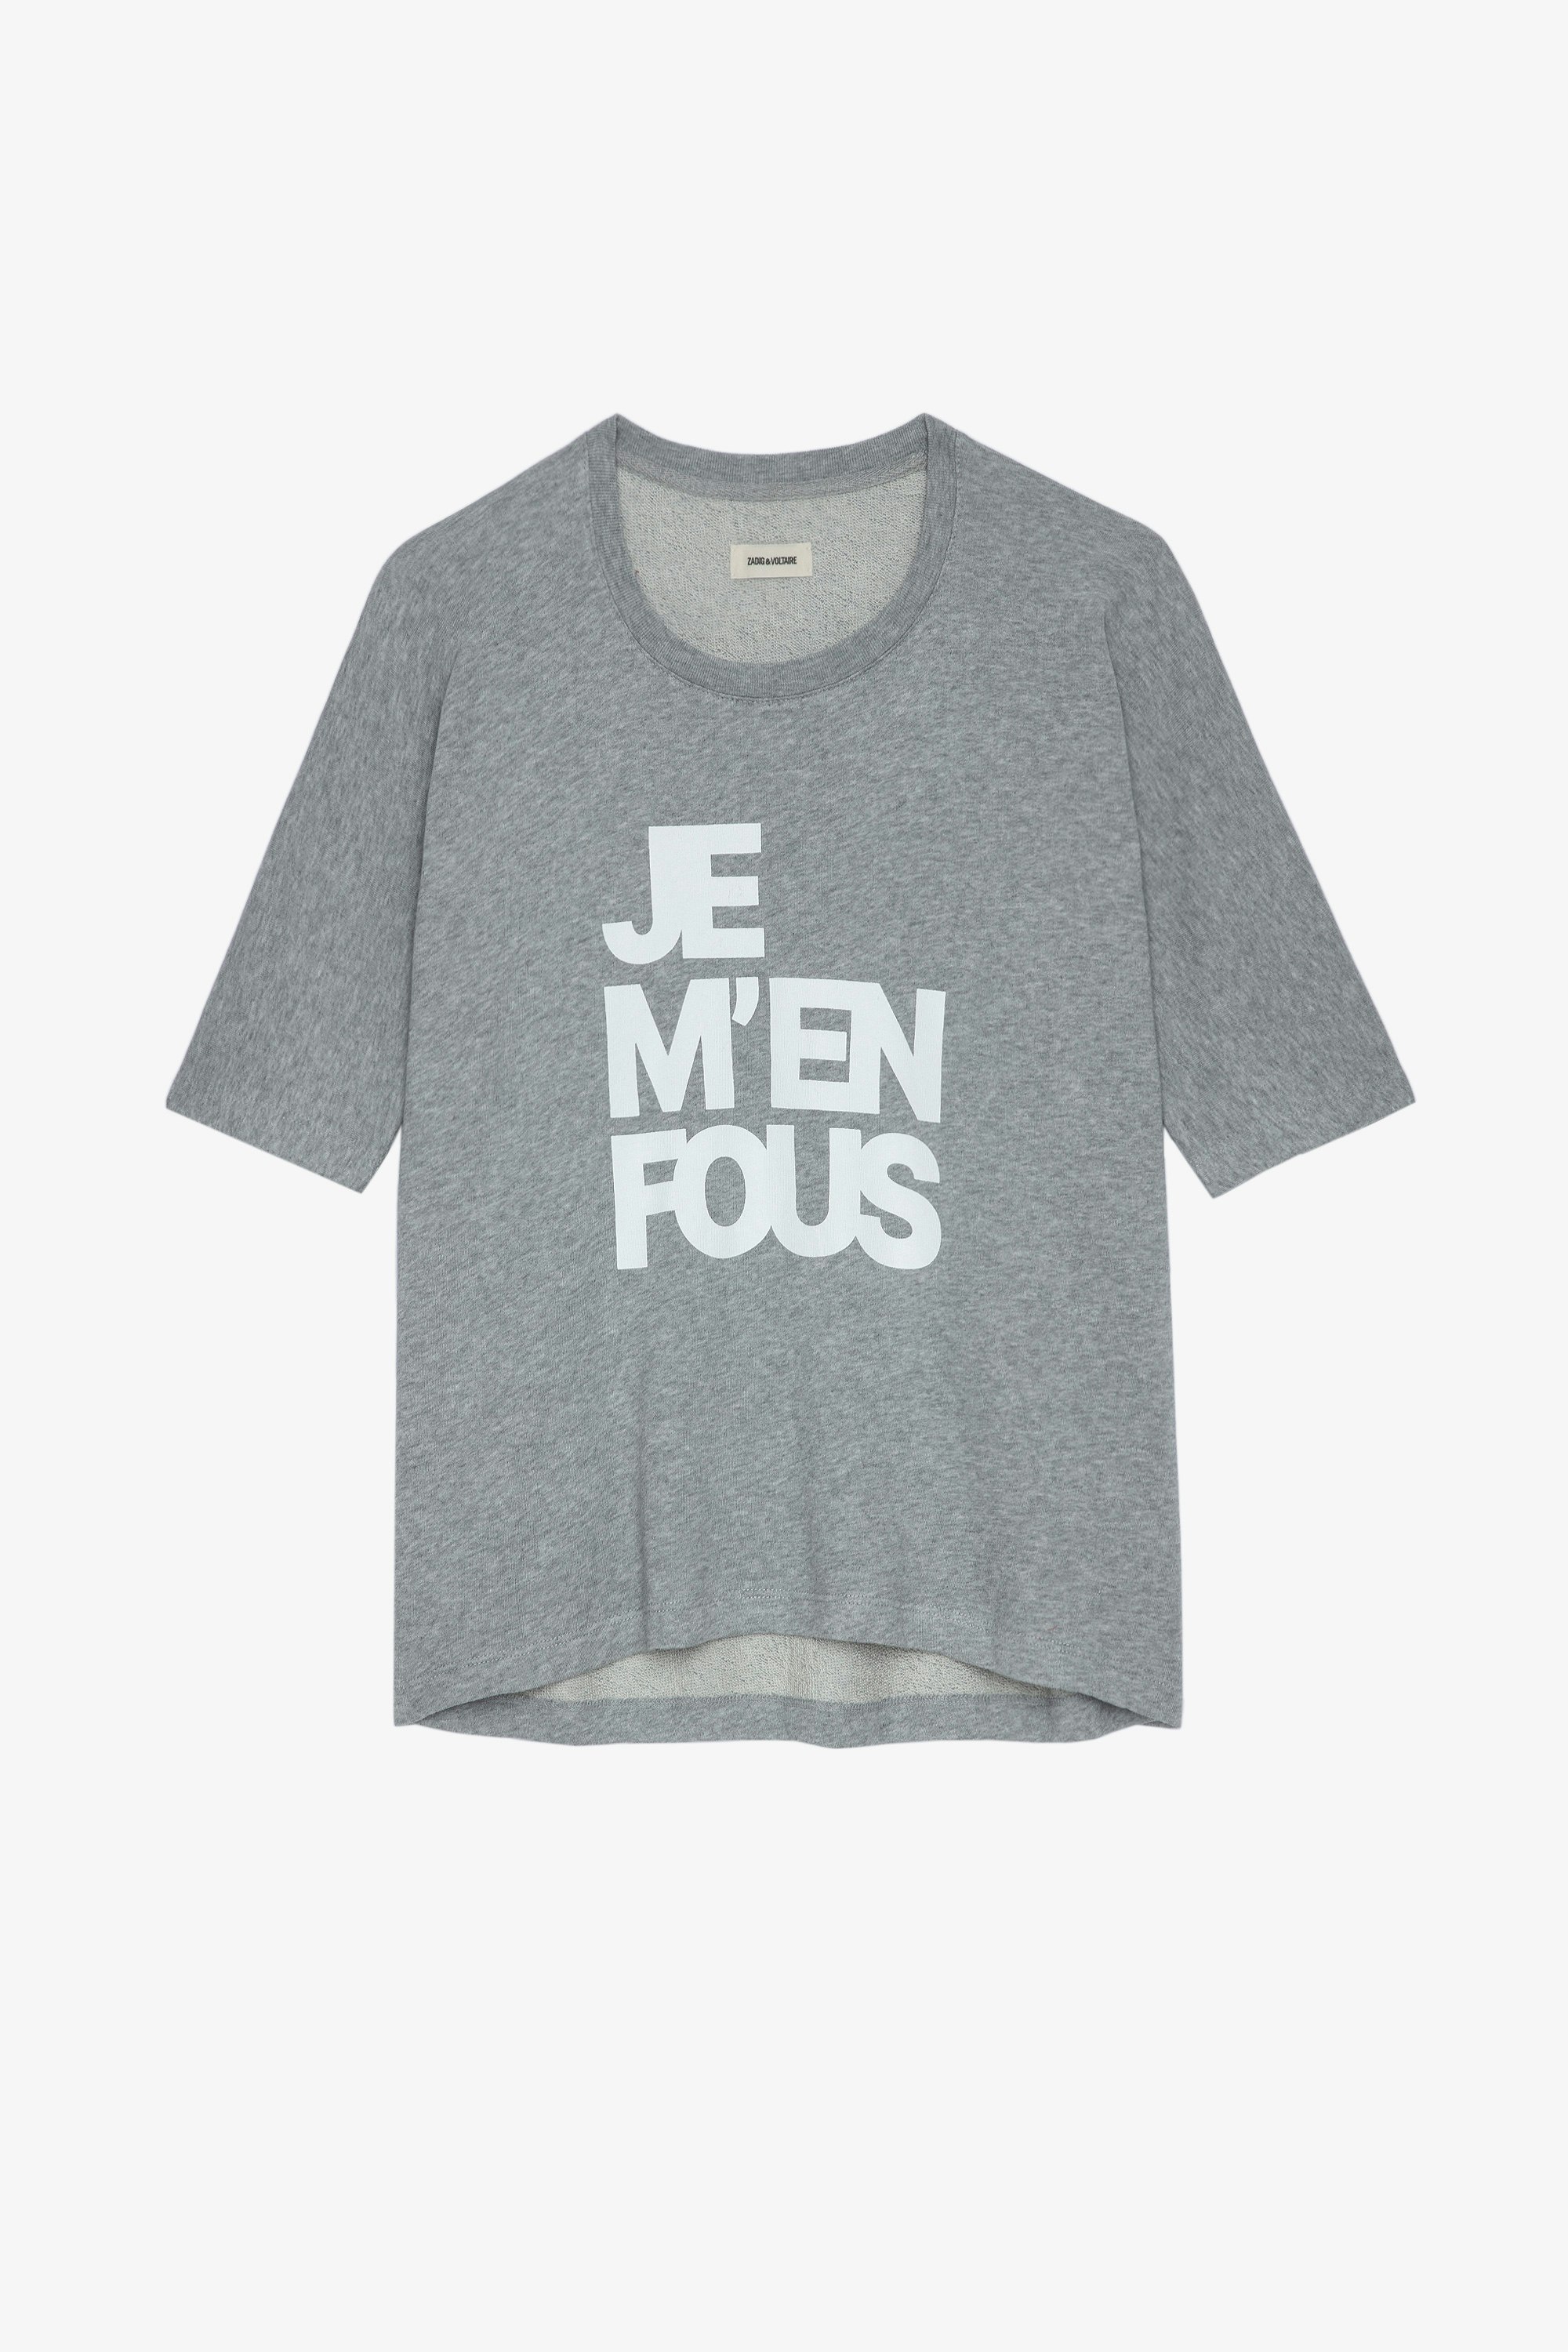 Felpa Portland JMF Felpa in cotone grigio screziato con scritta "Je m'en fous"donna